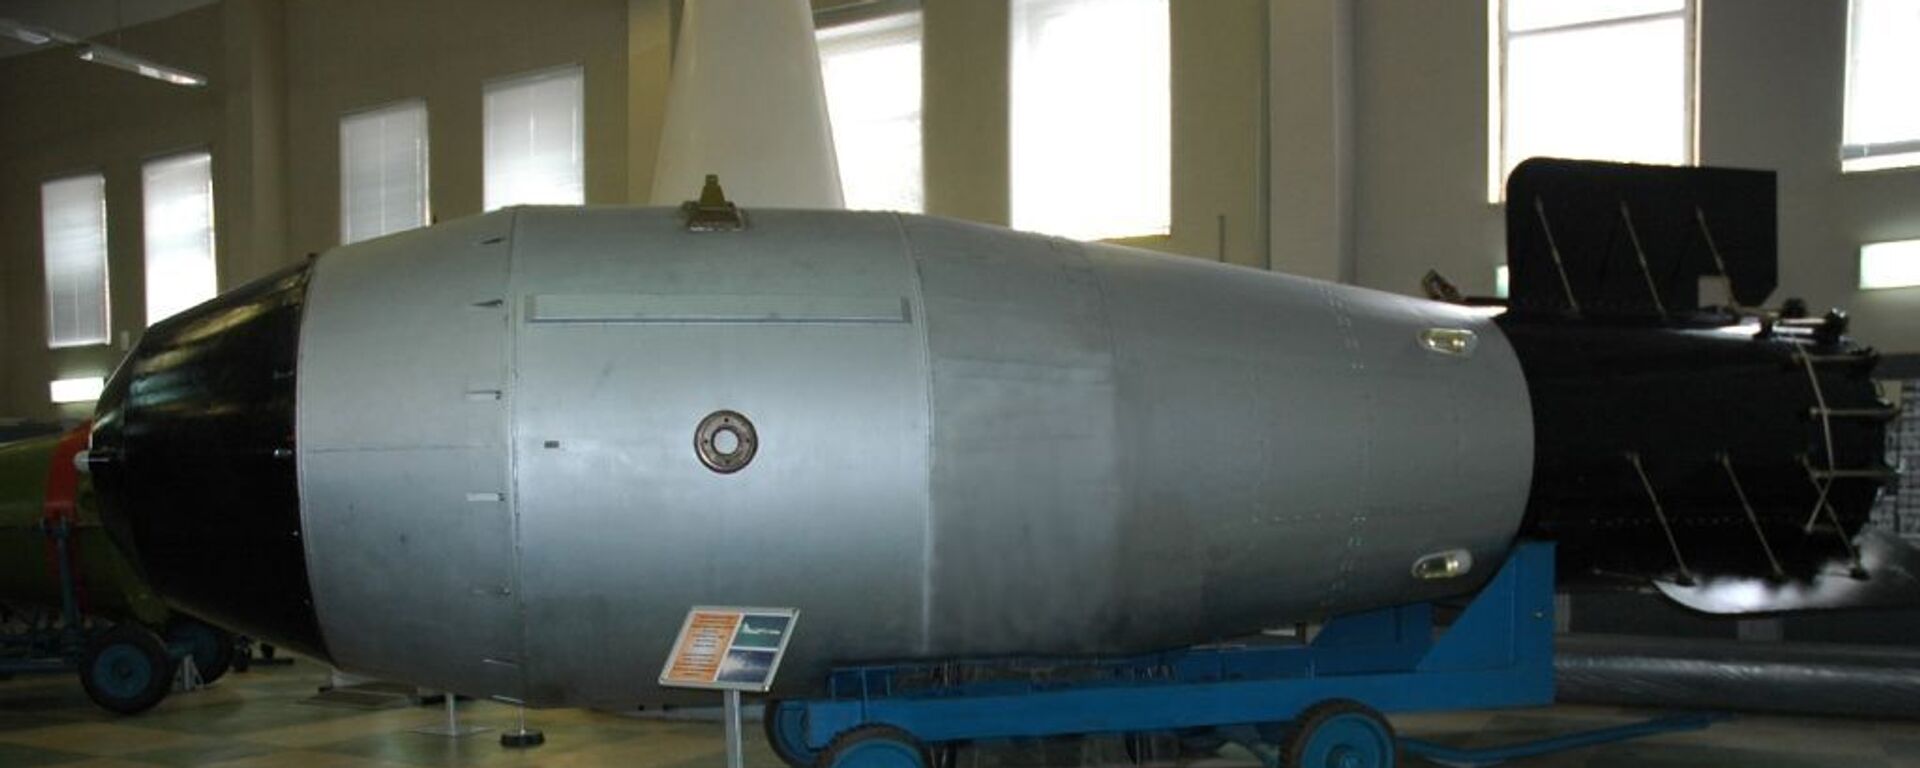 Mô hình quy mô đầy đủ của Bom Saar AN602 tại Bảo tàng Vũ khí Hạt nhân của RFNC-VNIIEF ở Sarov - Sputnik Việt Nam, 1920, 28.01.2020